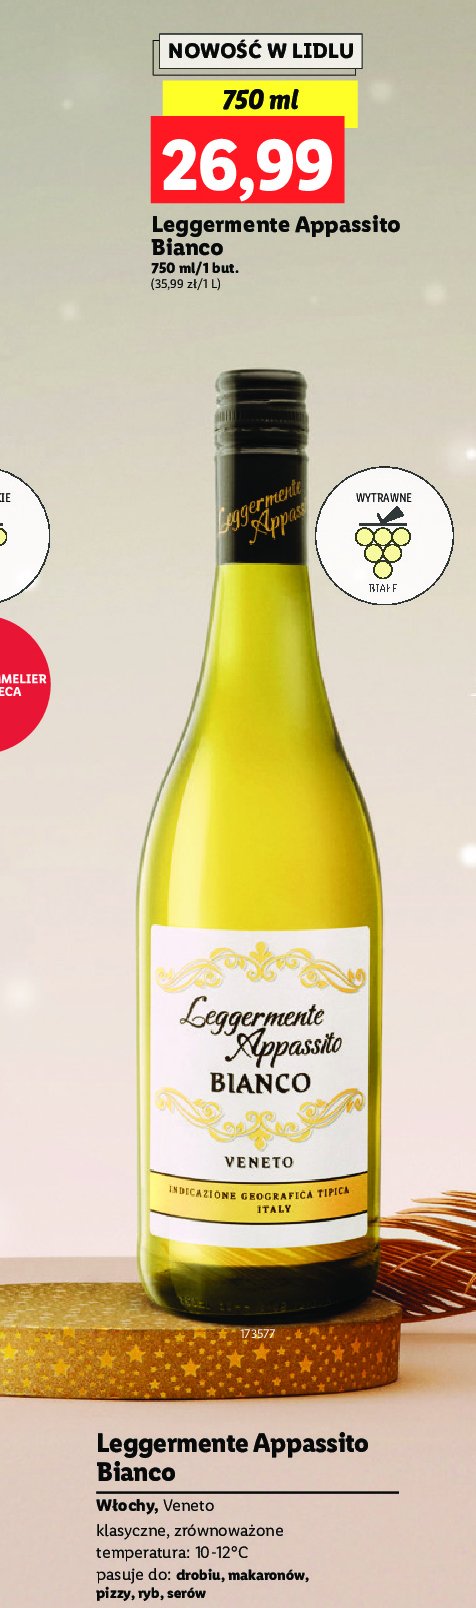 Wino Leggermente appasito bianco promocja